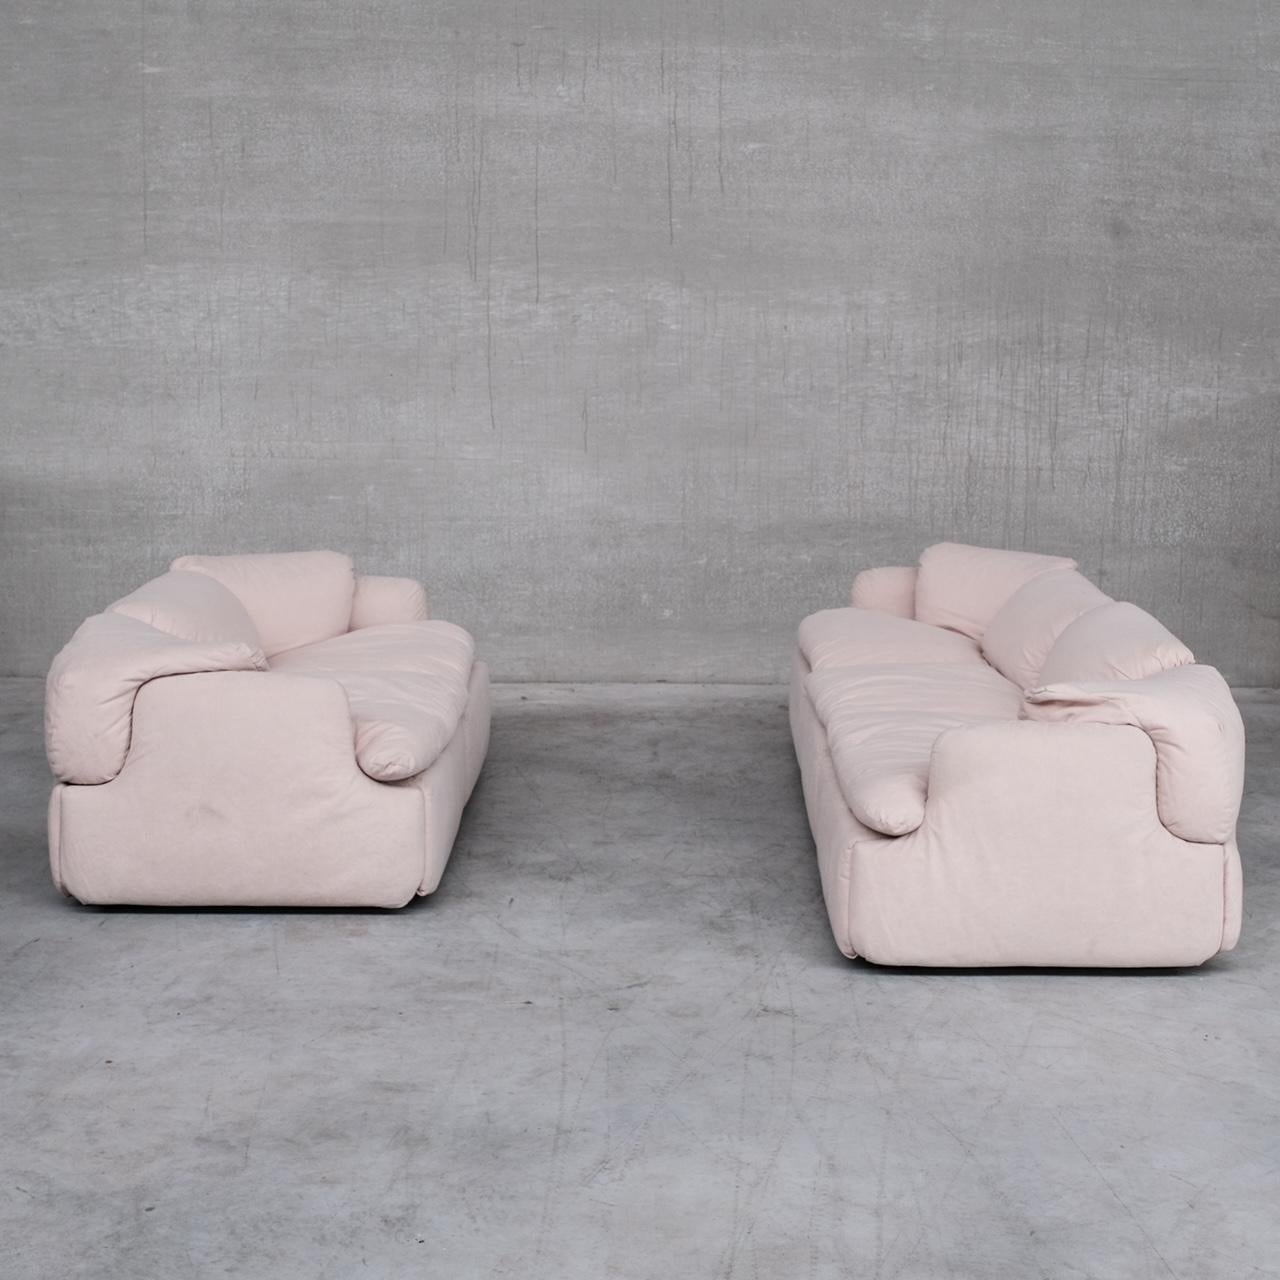 Un canapé trois places, par Alberto Rosselli pour Saporiti. 

Le modèle confidentiel. 

Italie, c1972.

La sellerie d'origine en tissu blanc cassé a été nettoyée et conservée, elle reste en très bon état. 

Nous avons une paire de sièges